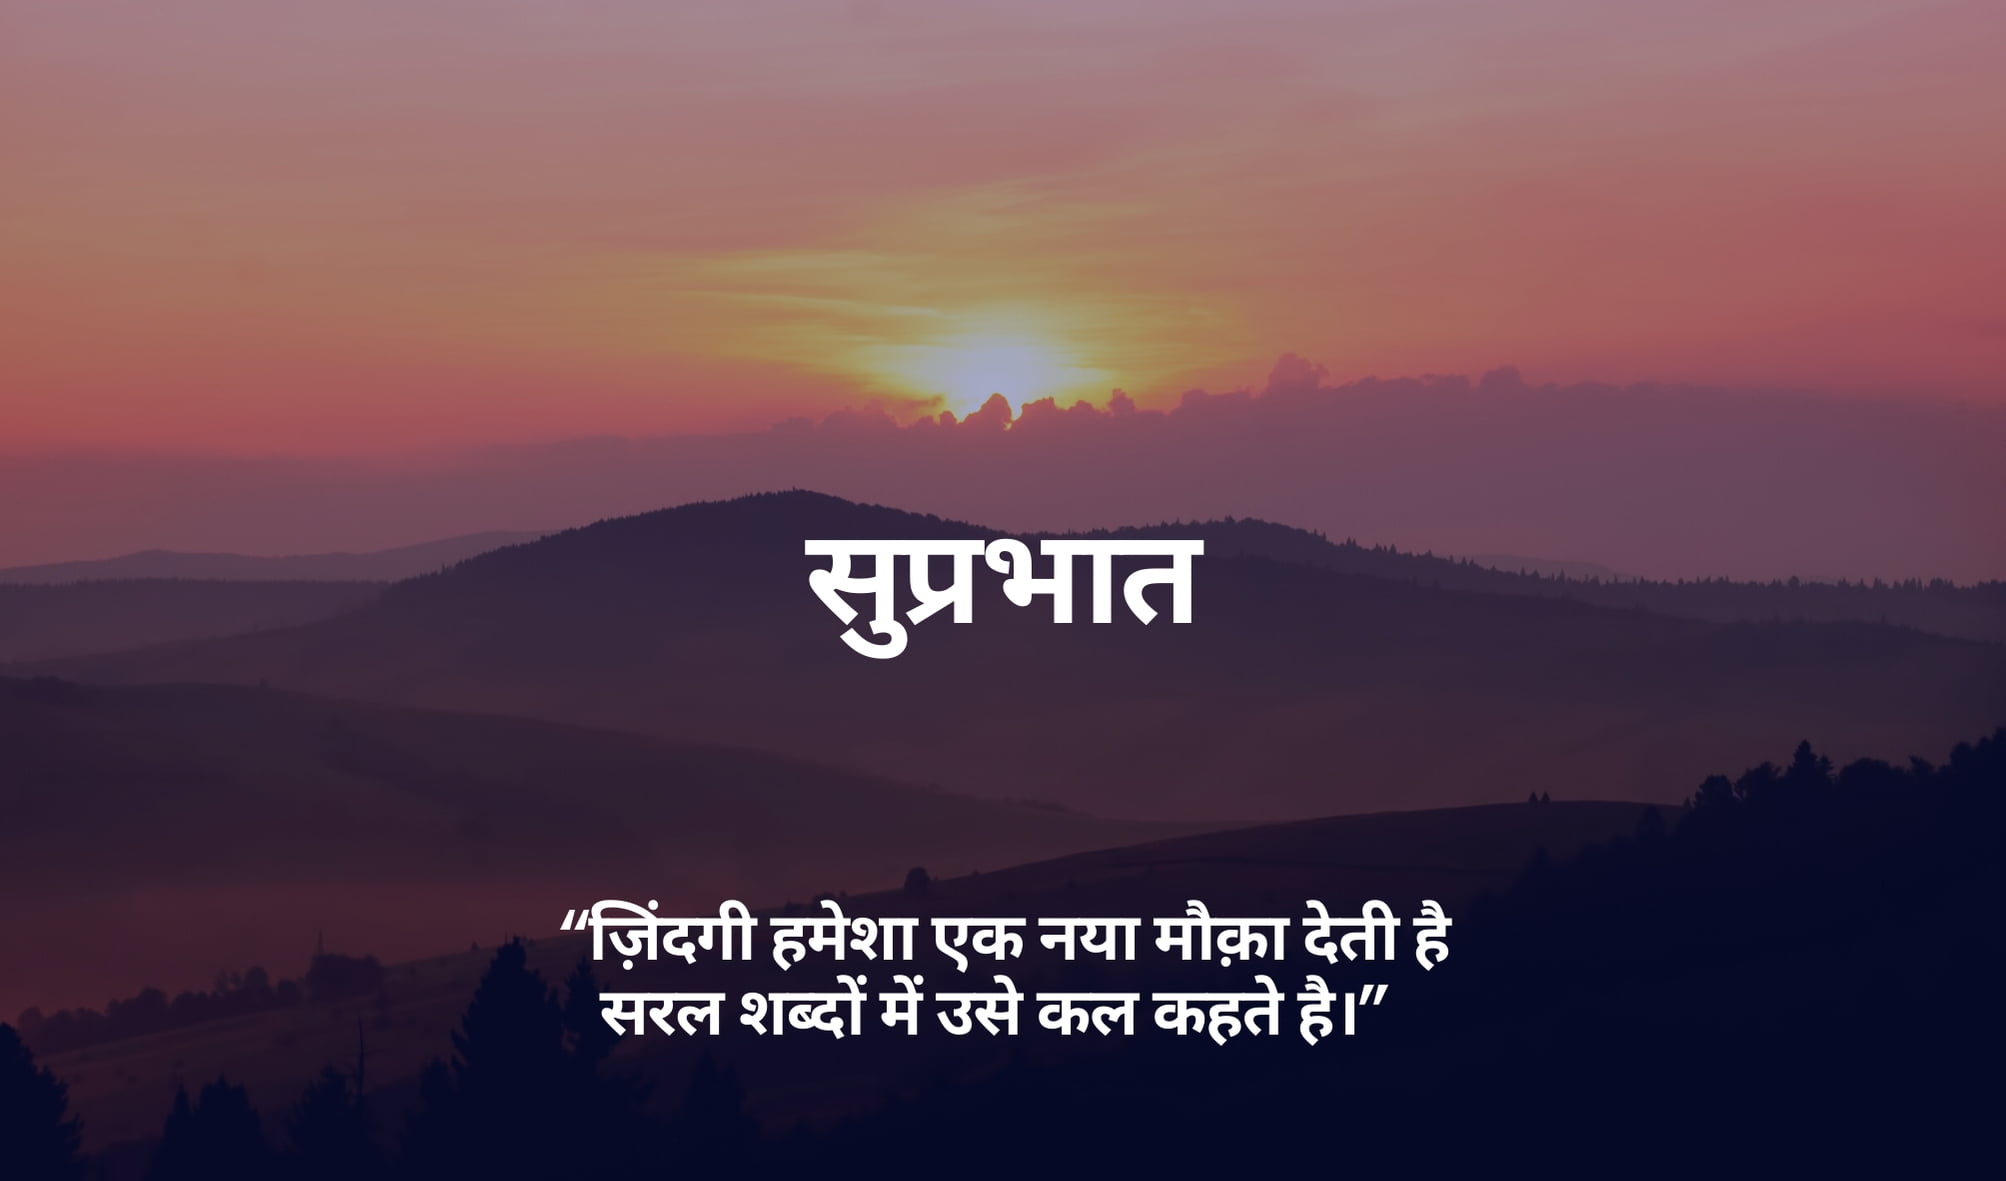 Hindi Good Morning Quote Image